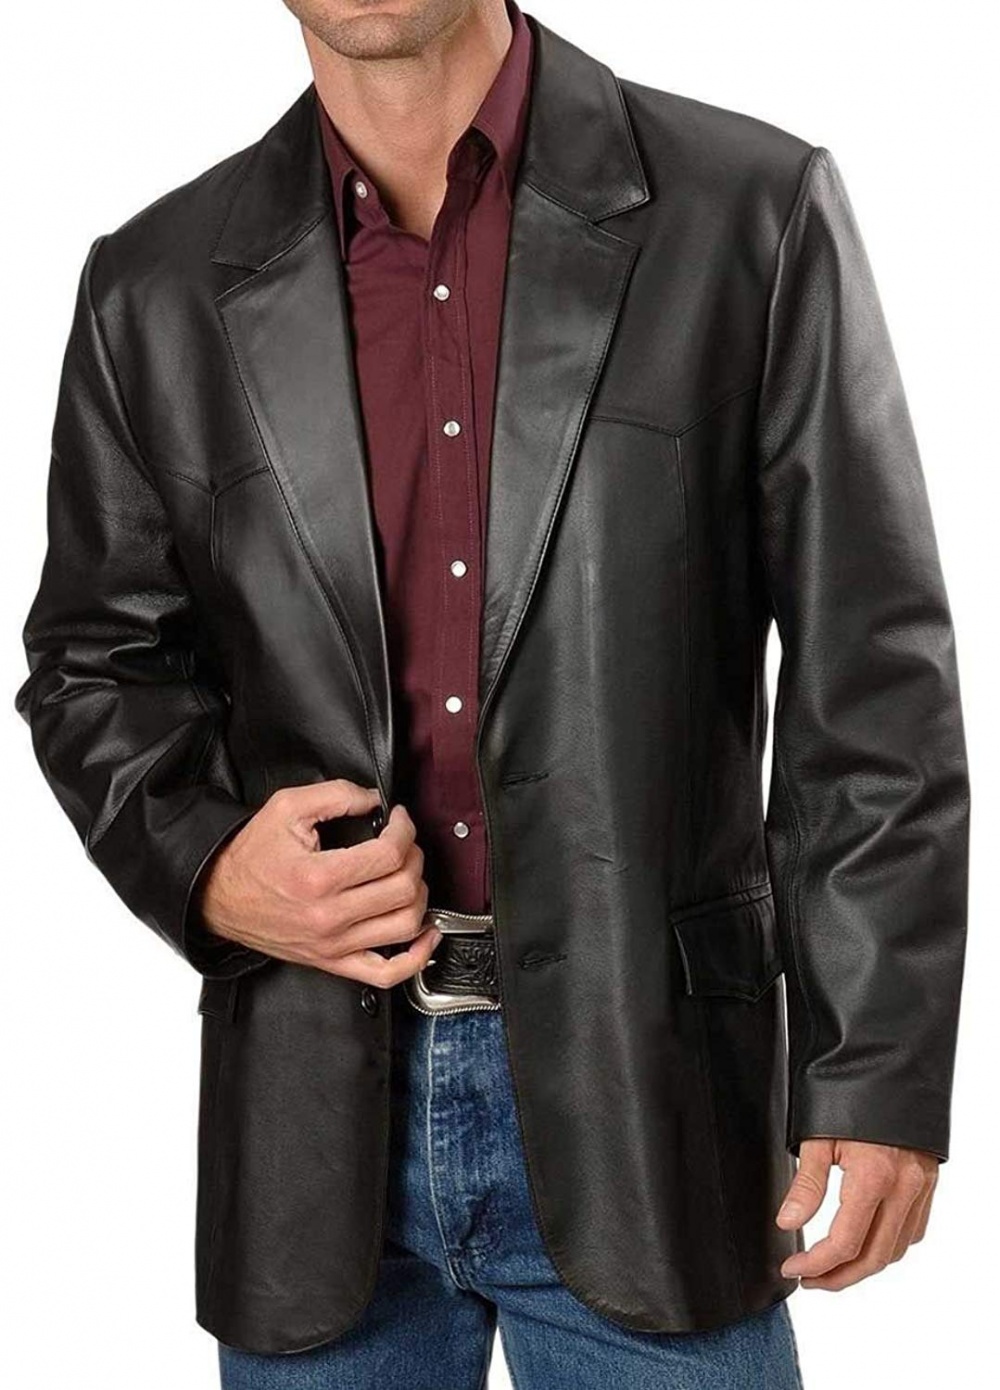 Пиджак из кожи мужской. Кожаный пиджак мужской MNG man. Пиджак кожаный мужской стильный. Кожаная куртка пиджак мужская.